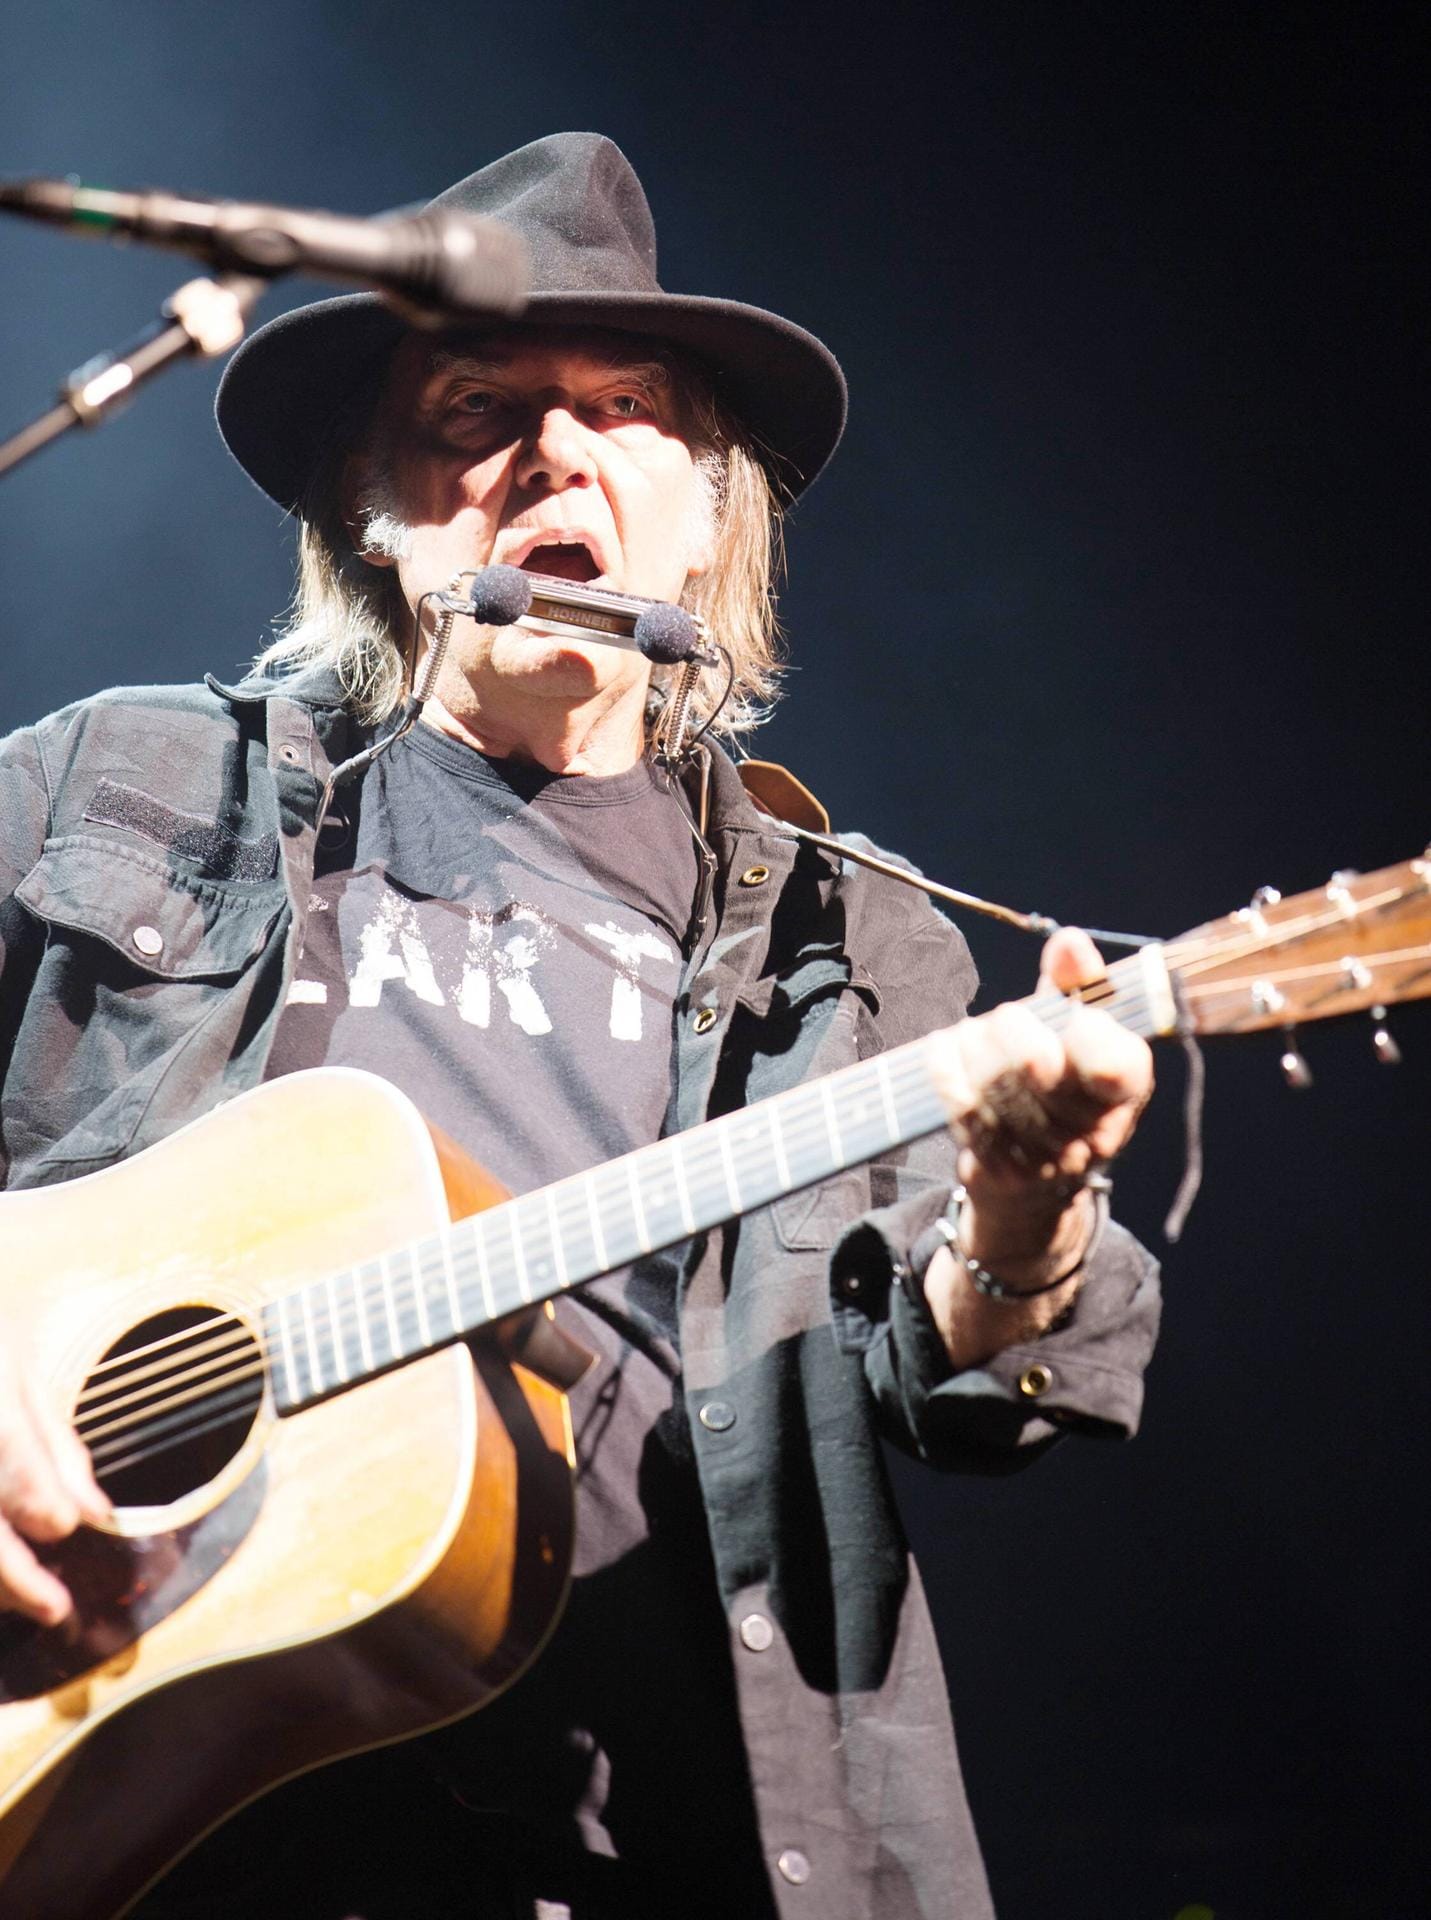 Neil Young: Der Rocker leidet seit seiner frühen Kindheit an Diabetes. Er hatte zudem Krankheiten wie Polio und Epilepsie. Seine Karriere konnte all das nicht aufhalten.